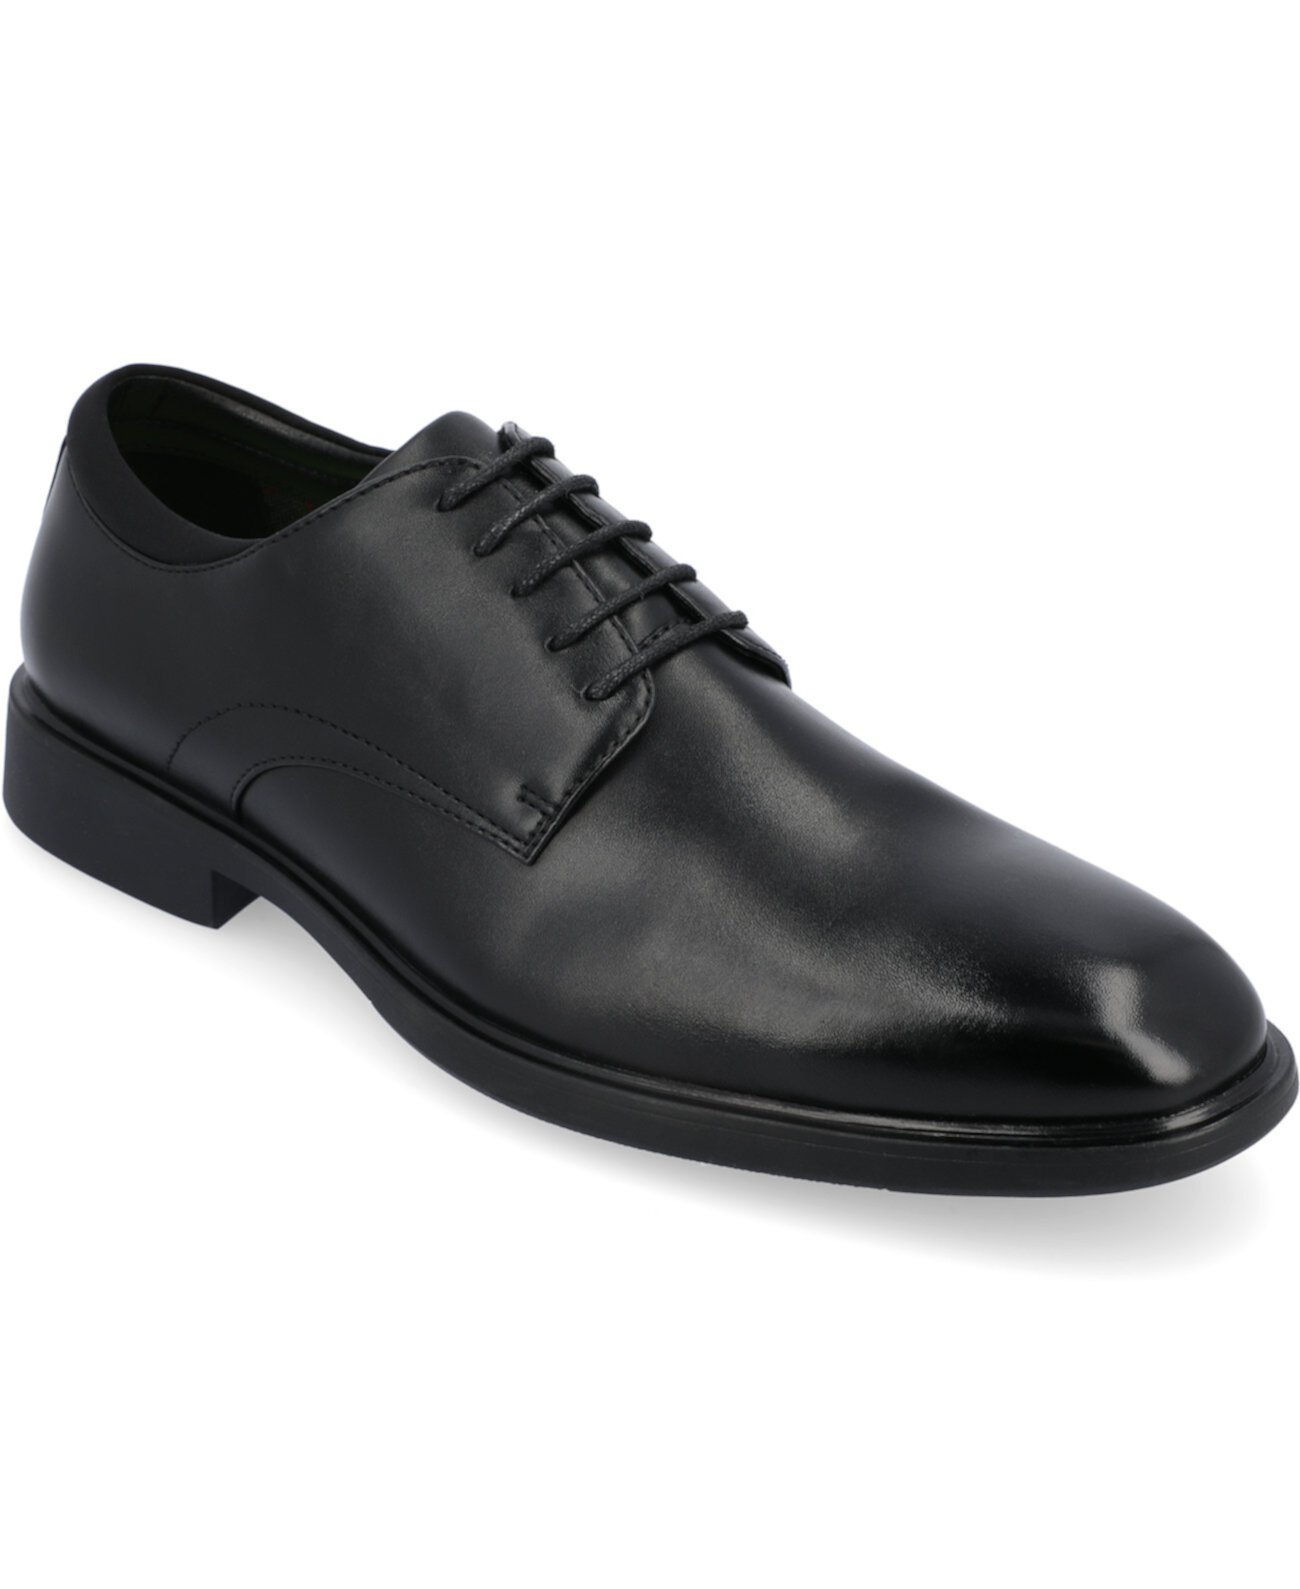 Мужские классические туфли Kimball с простым носком Vance Co.